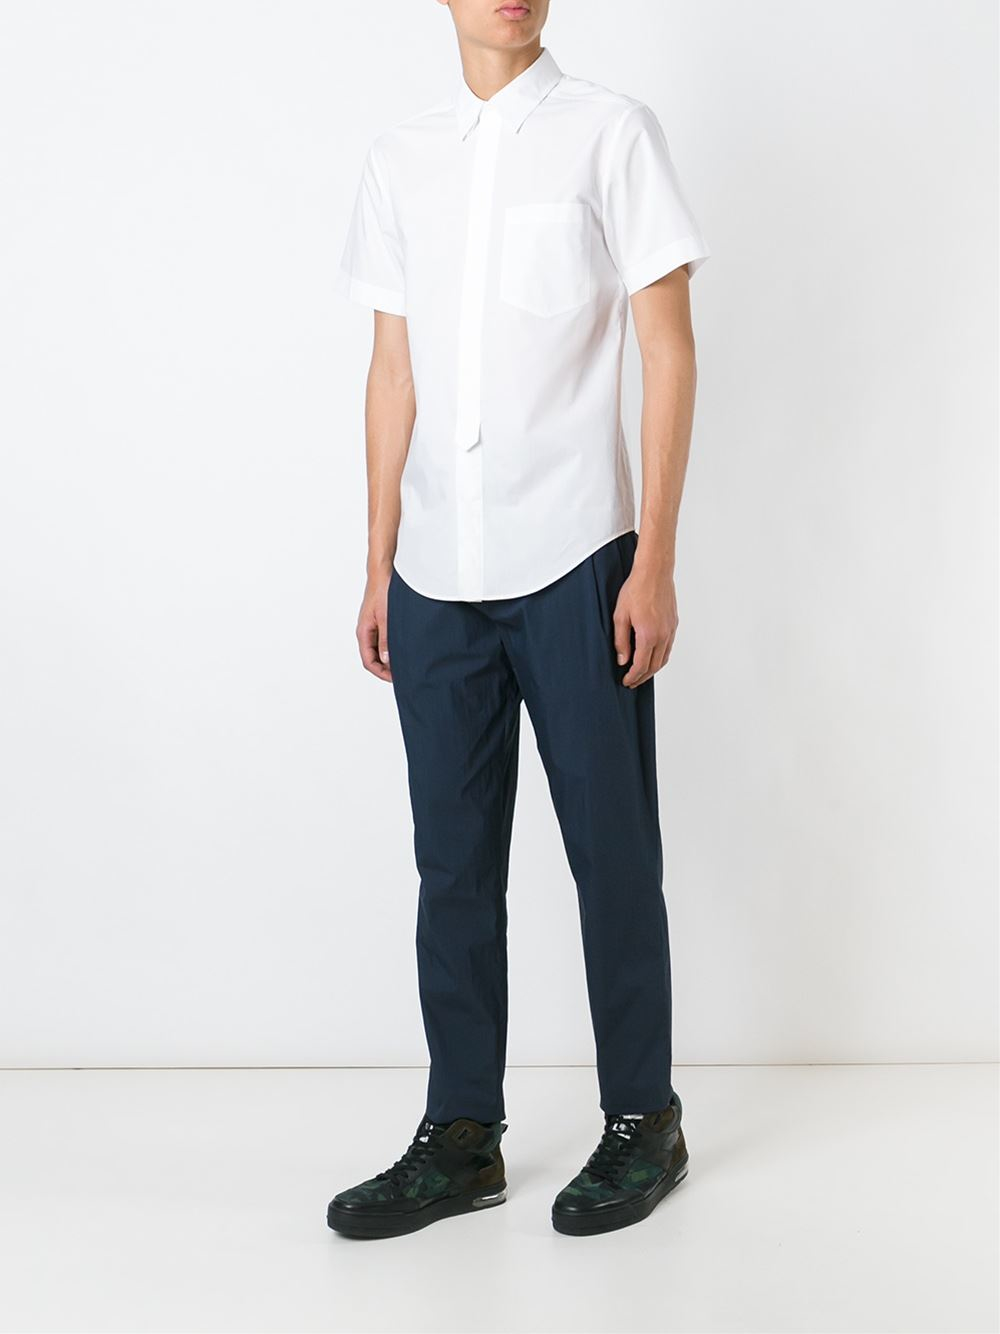 Lyst - Alexander Wang Shortsleeved Shirt in White for Men